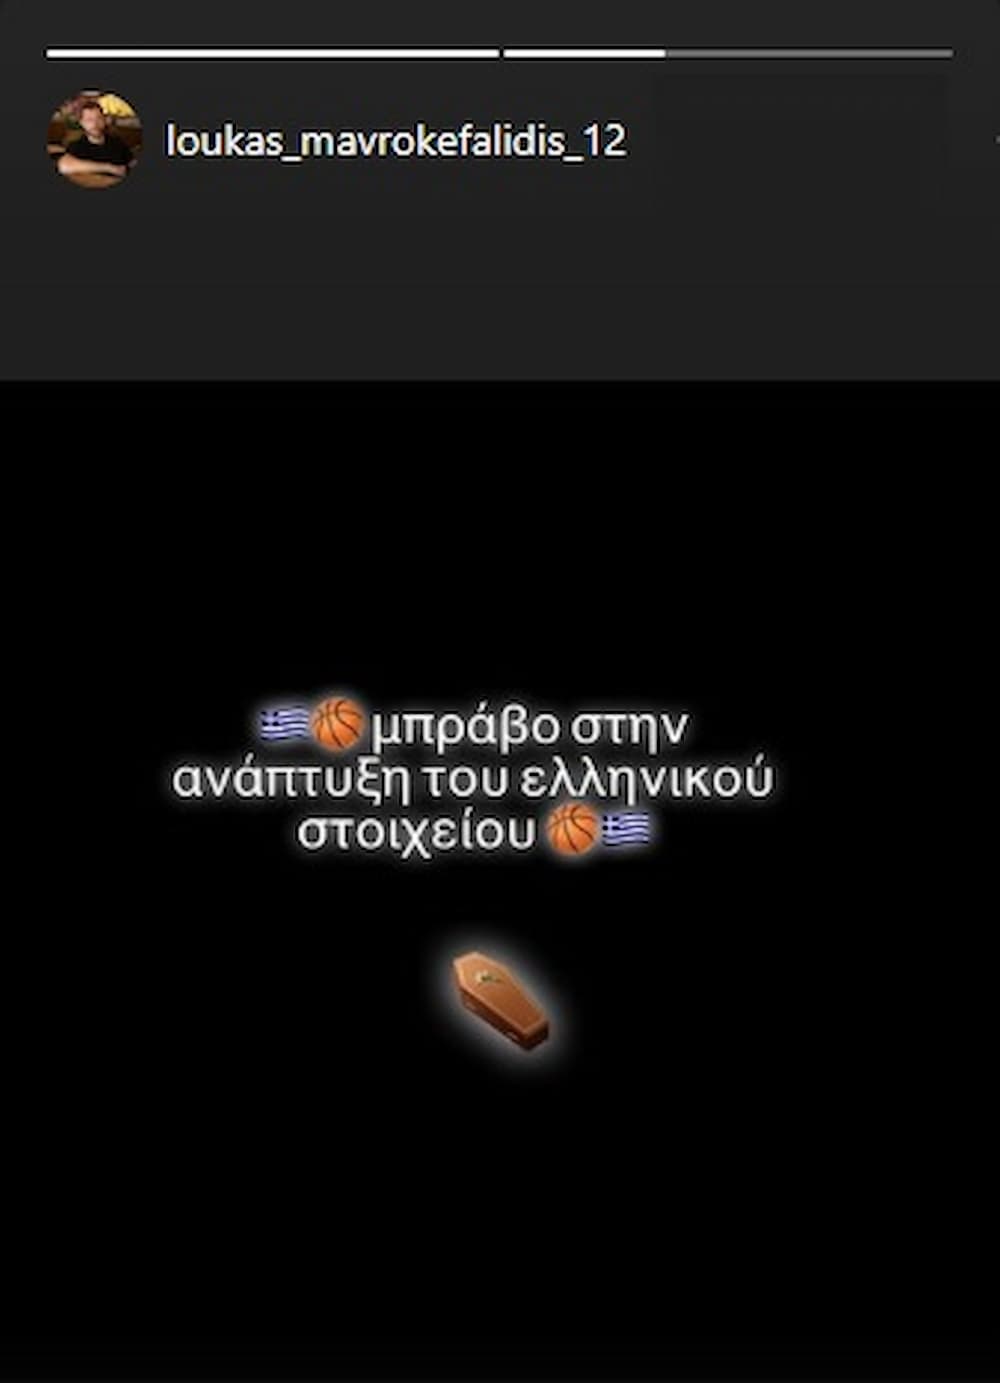 mavrokefalidis - Μαυροκεφαλίδης κατά της απόφασης για Γουόκαπ: «Μπράβο στην ανάπτυξη του ελληνικού στοιχείου» (εικόνα)